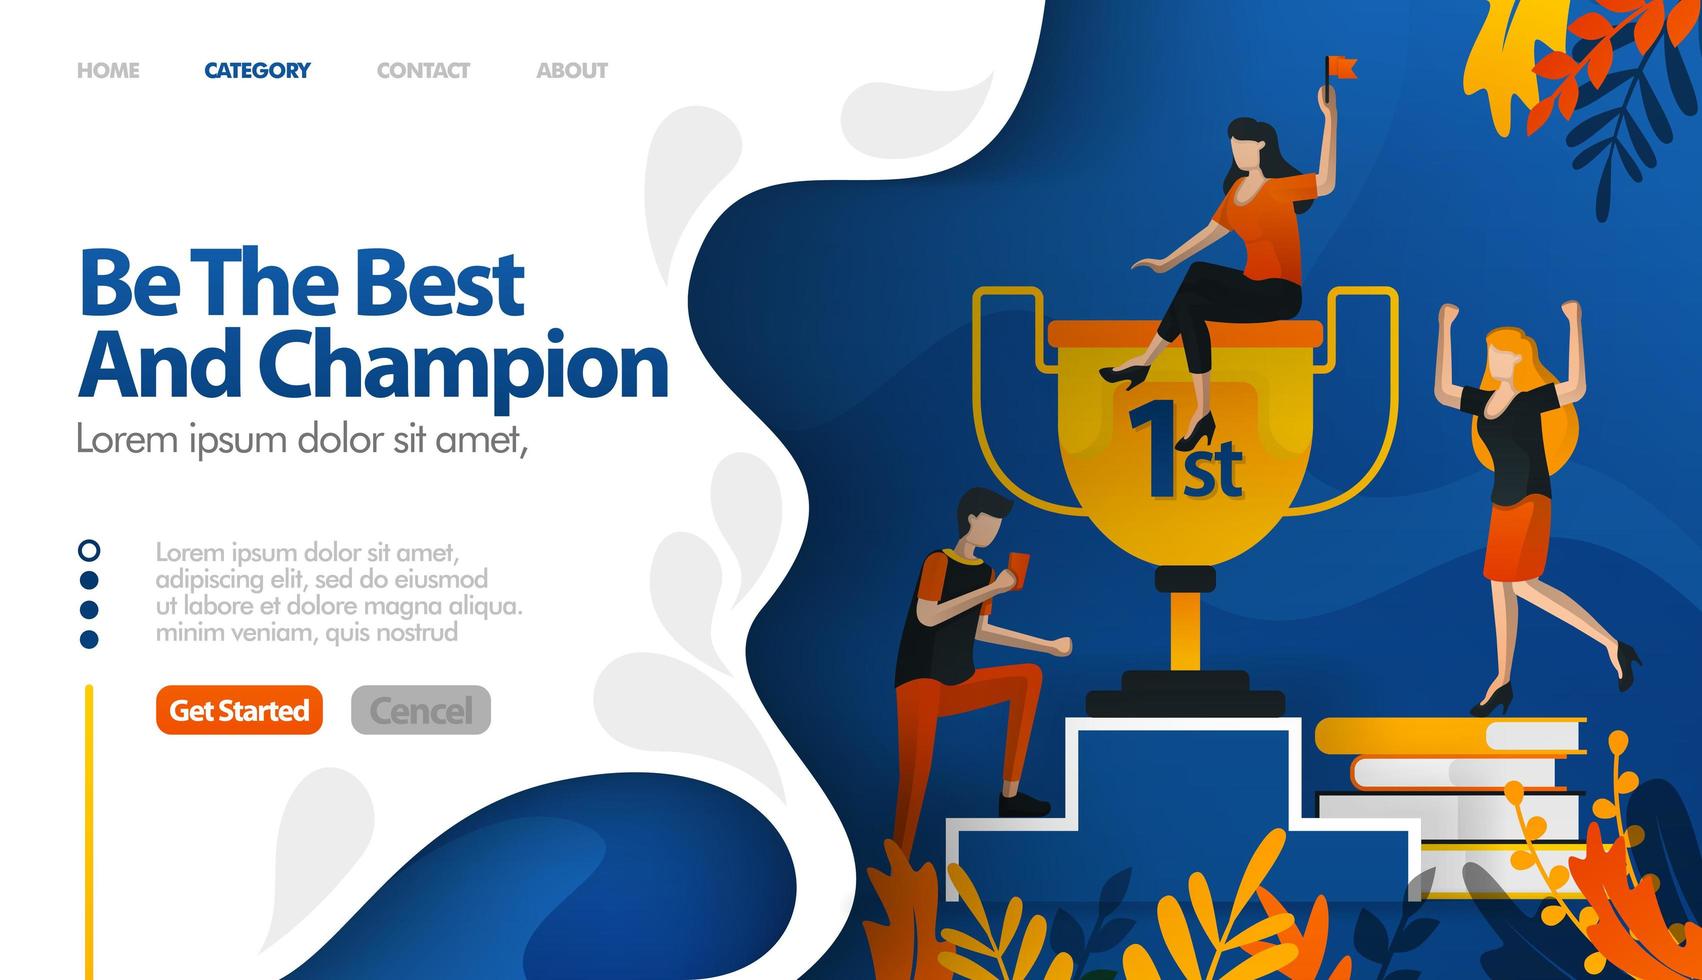 Seien Sie der Beste und Champion, Trophäe für Nummer eins, Preis für Gewinner Vektor-Illustration Konzept kann verwendet werden, Landing Page, Vorlage, UIux, Web, mobile App, Poster, Banner, Website vektor